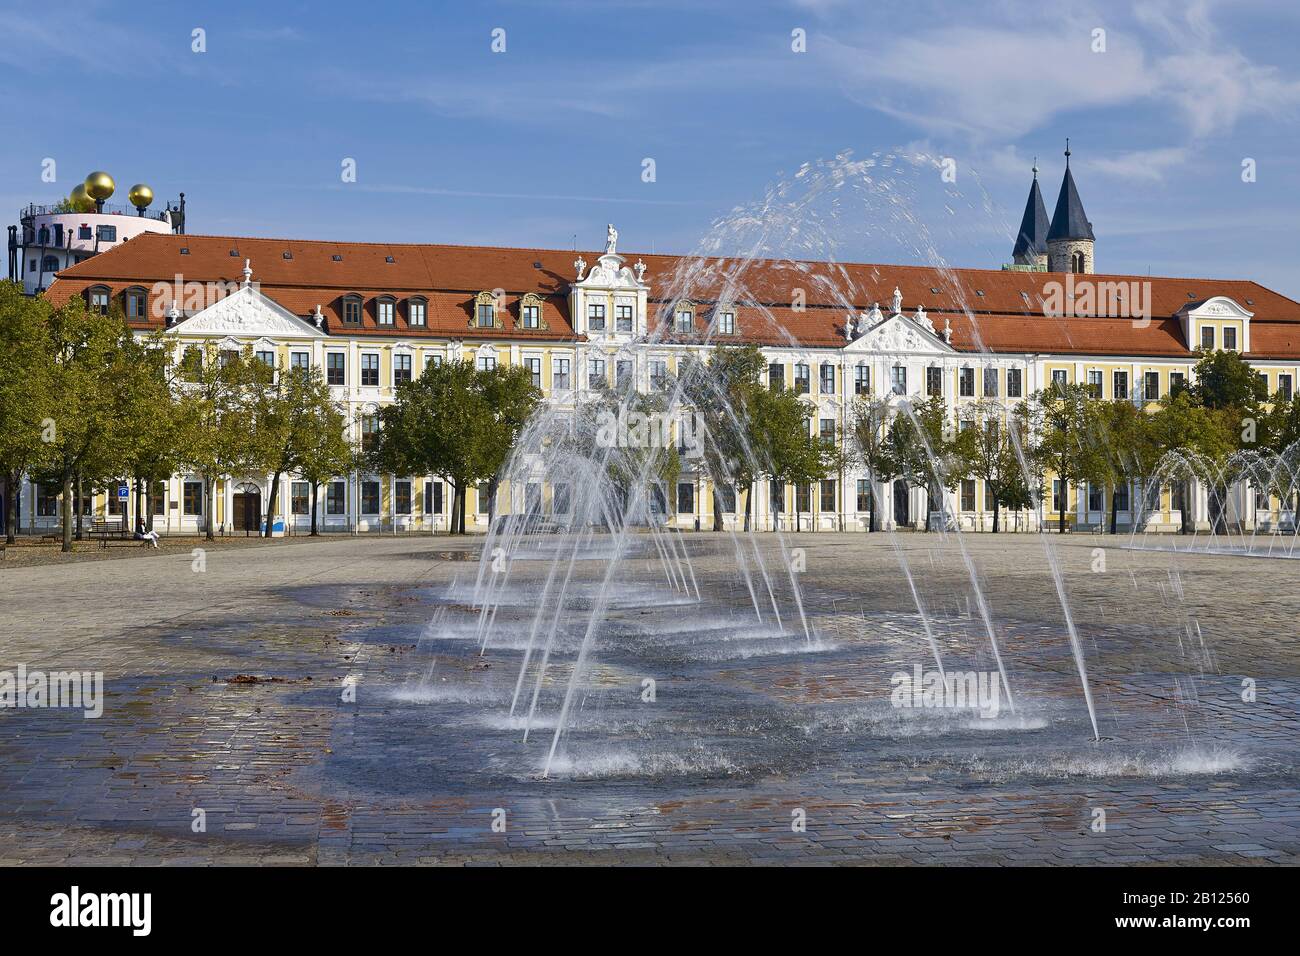 Landtagsgebäude mit Wasseraufzügen auf dem Domplatz, Magdeburg, Sachsen-Anhalt, Deutschland Stockfoto